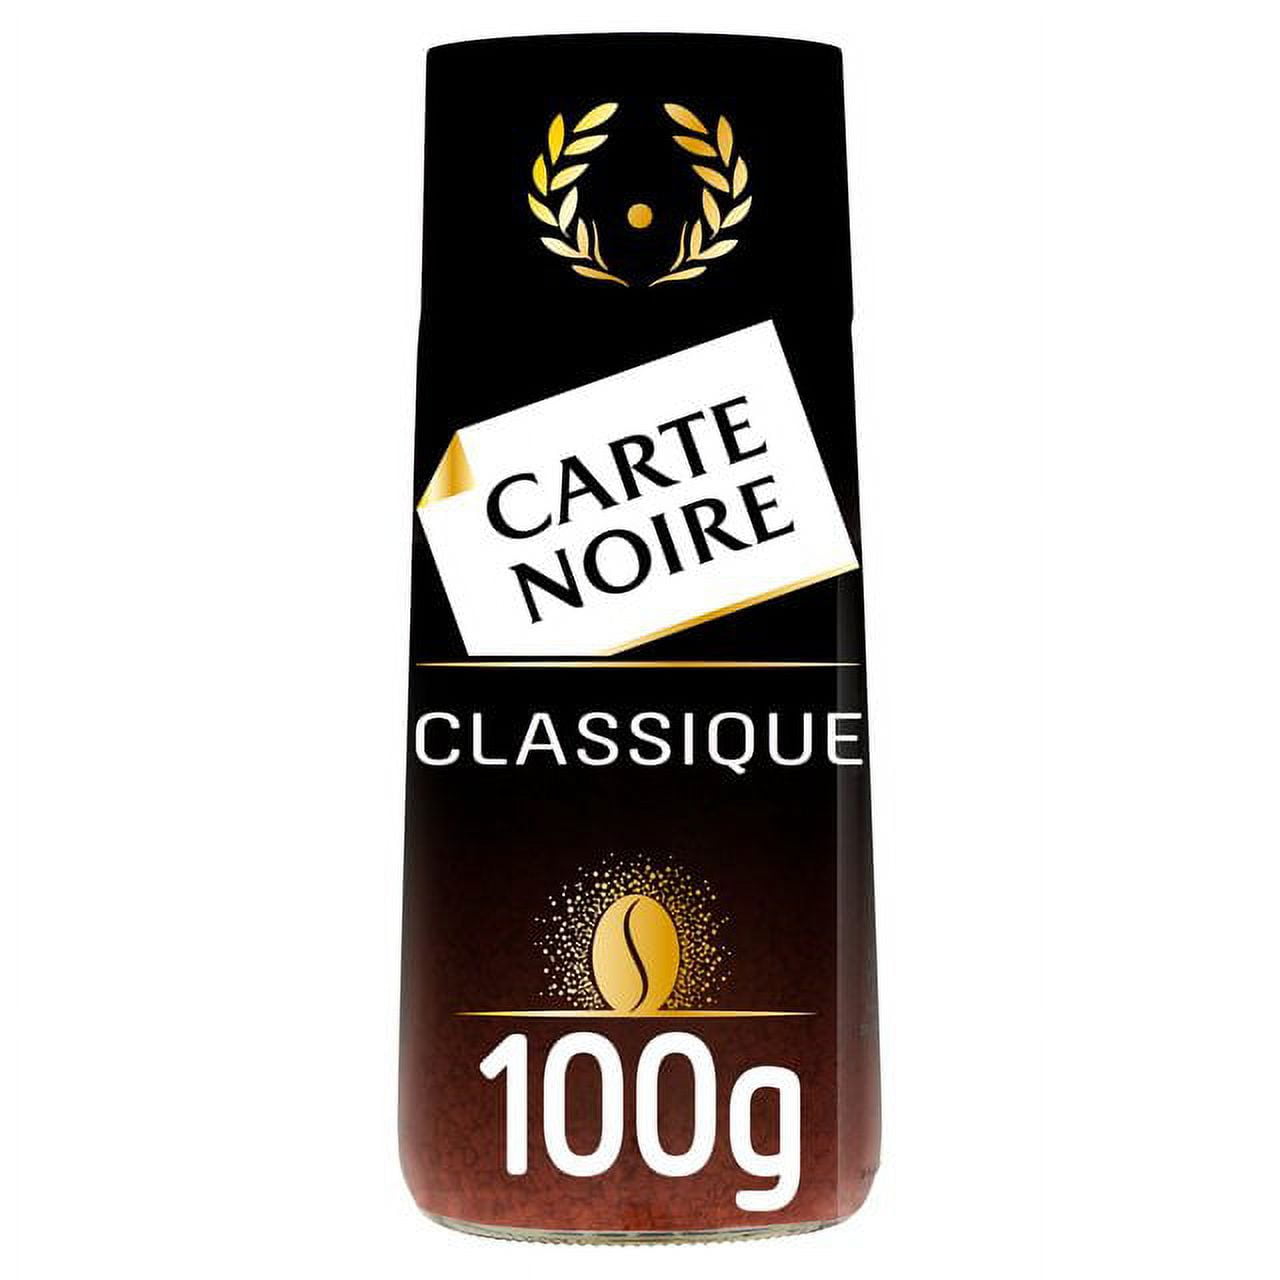 Carte Noire classique 100g